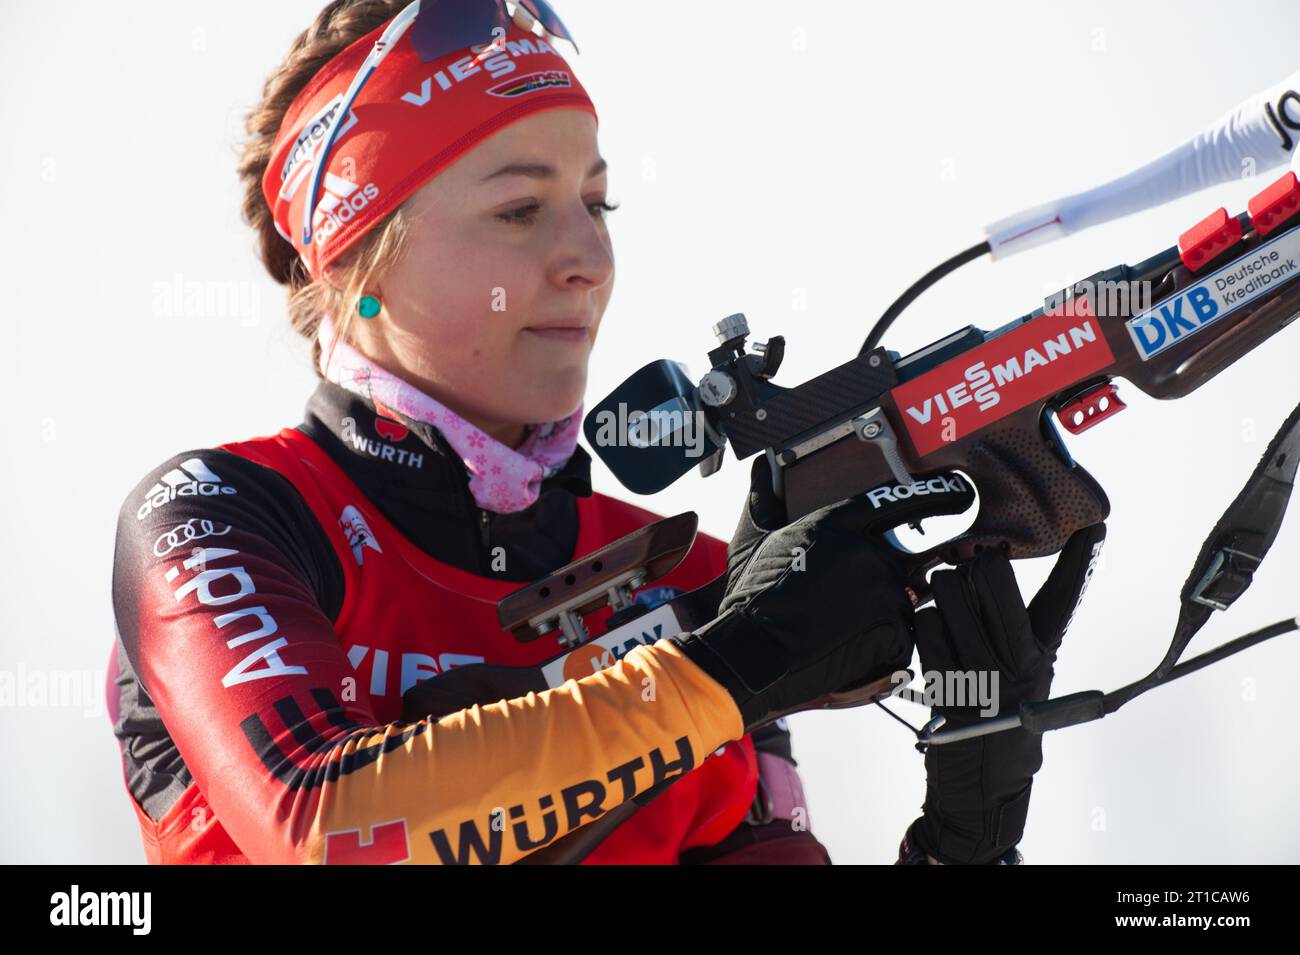 KUMMER Luise Geste Biathlon Welt Cup 7,5 KM Sprint der Frauen in Hochfilzen, Oesterreich am 12.12.2014 Stock Photo